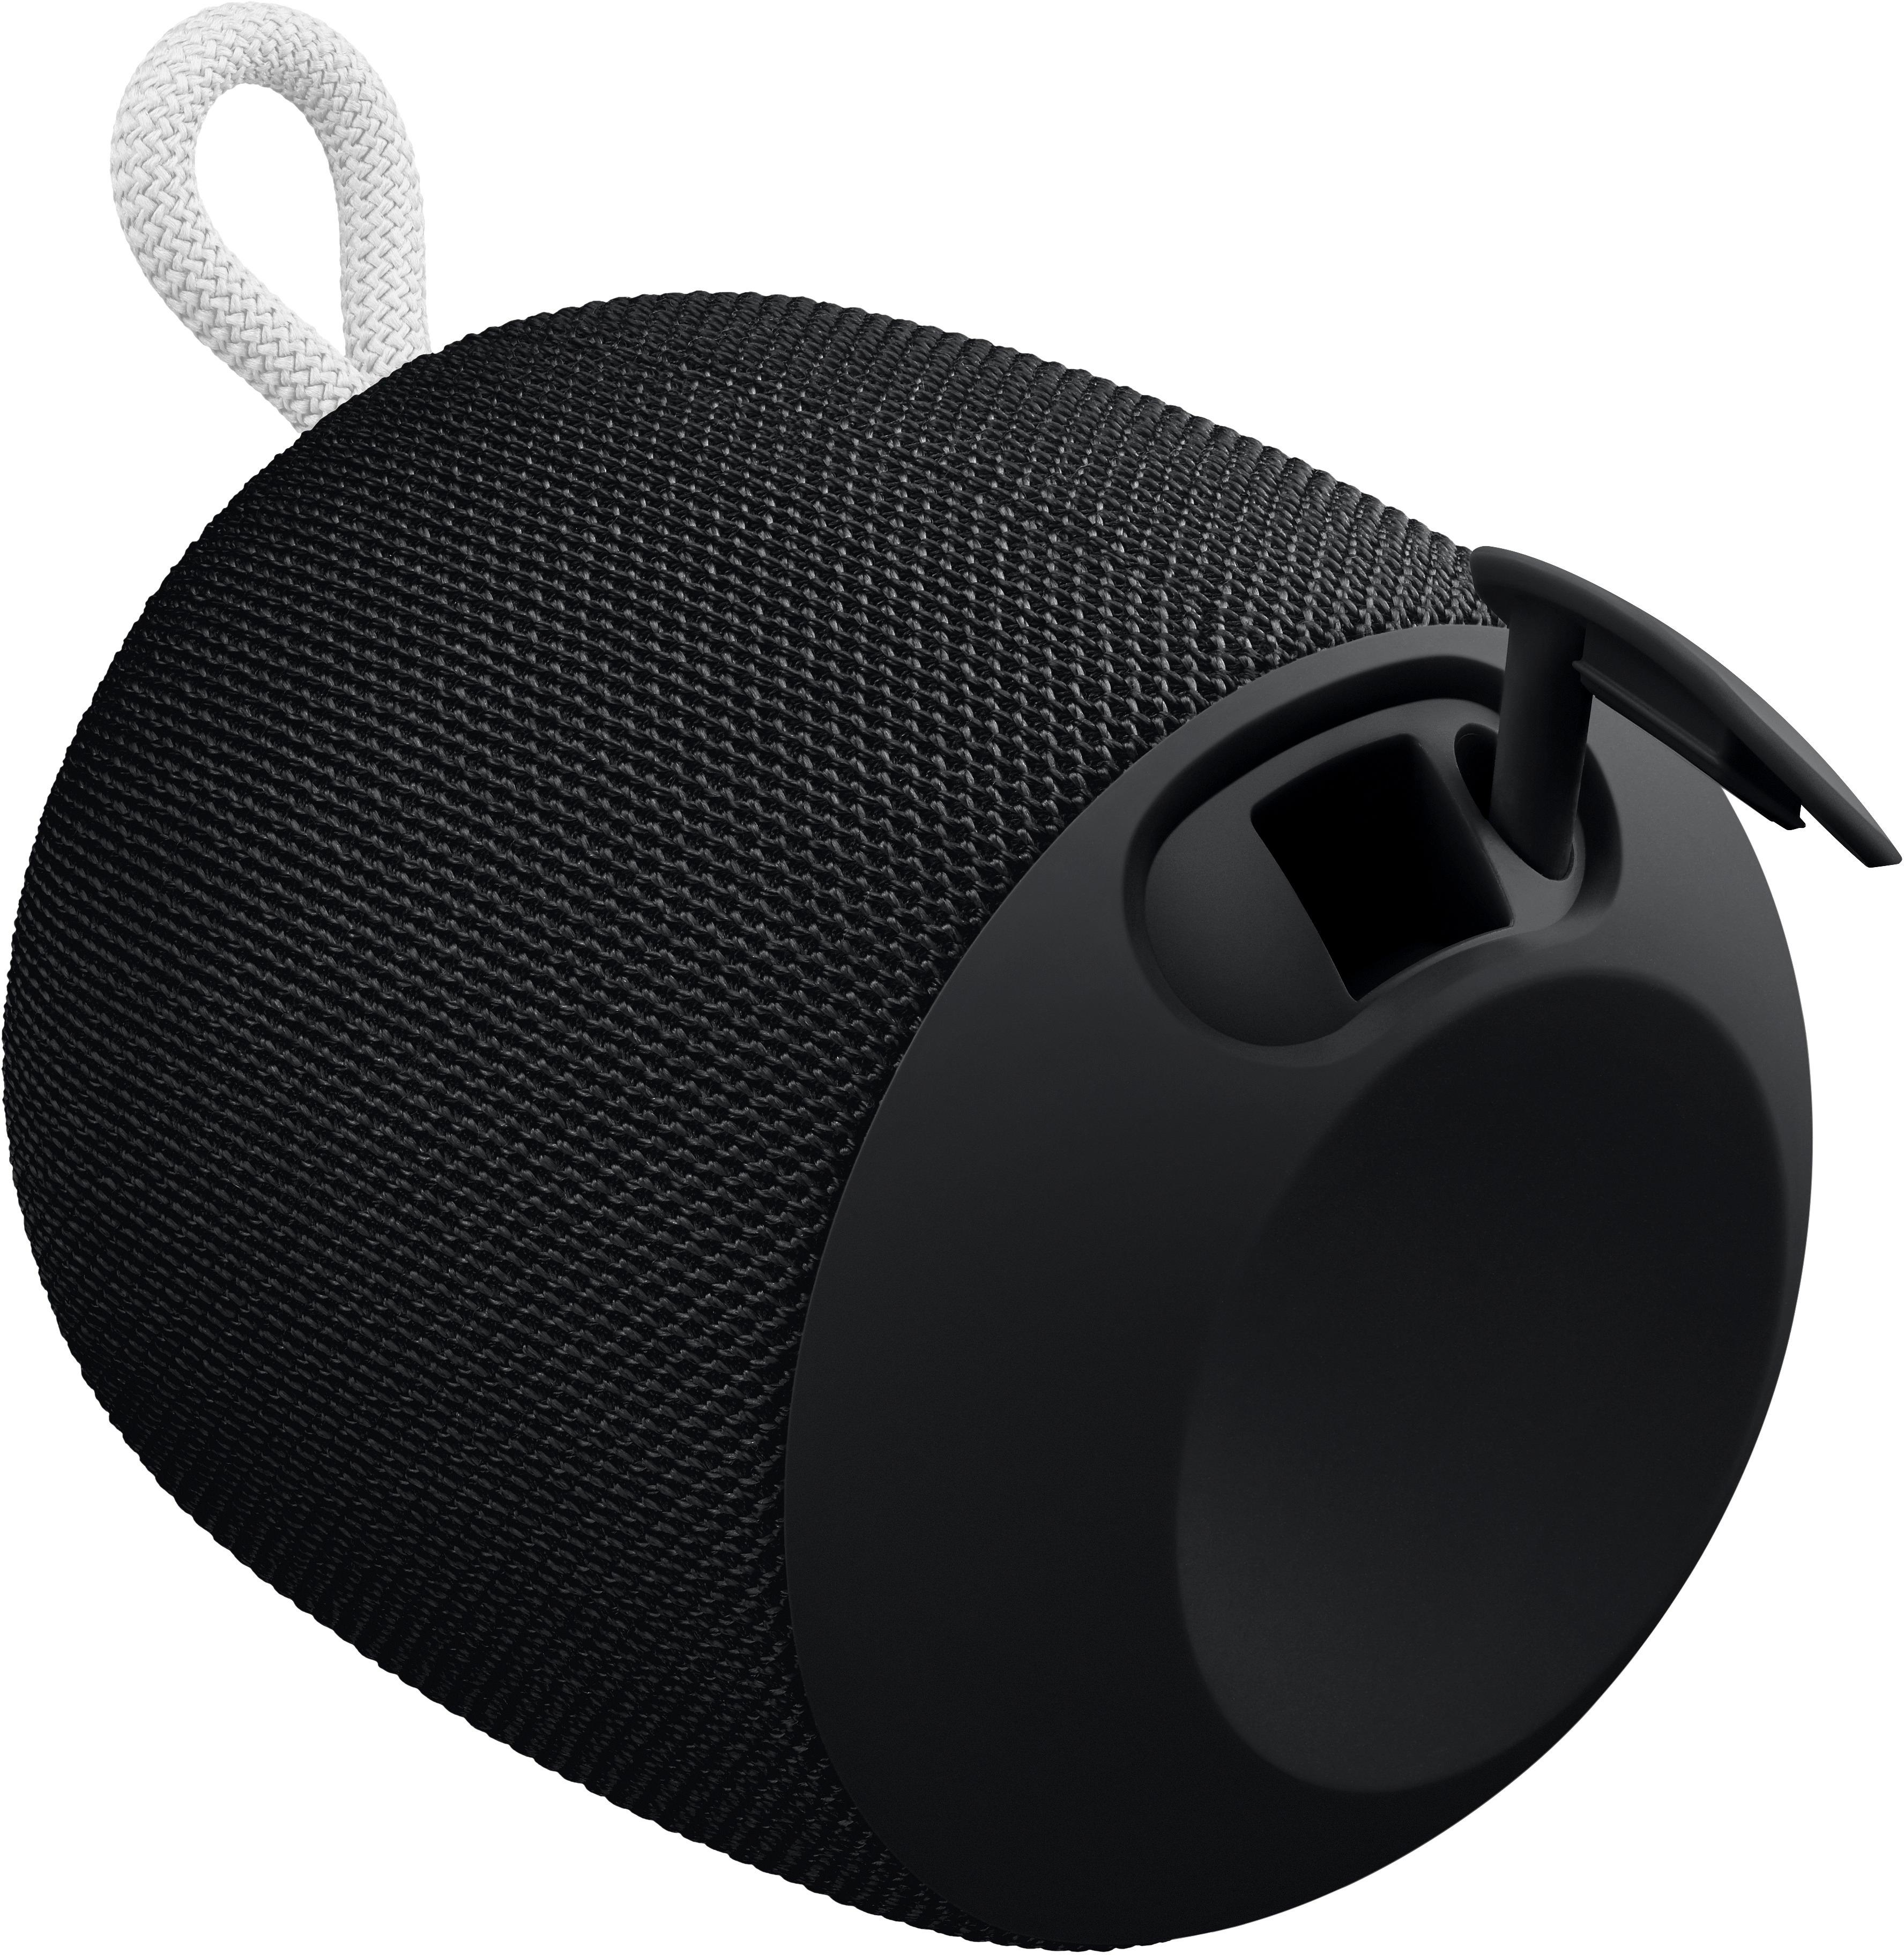 Ultimate Ears WONDERBOOM 3 portable Bluetooth speaker now down to $60 (Reg.  $100)